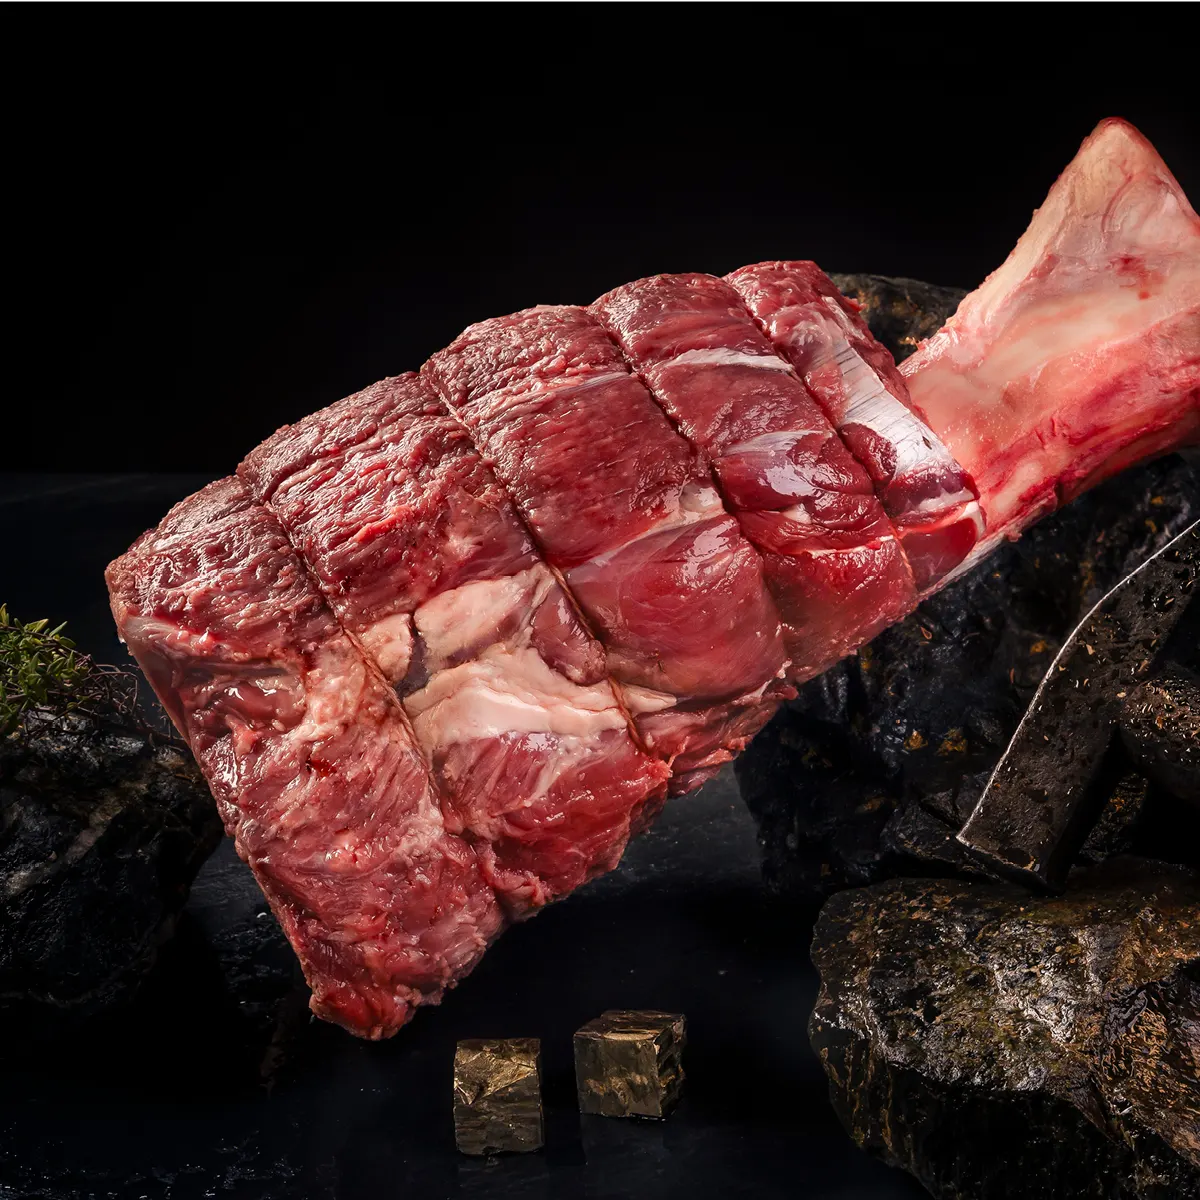 Rinderfleisch am Knochen vor dunklem Hintergrund